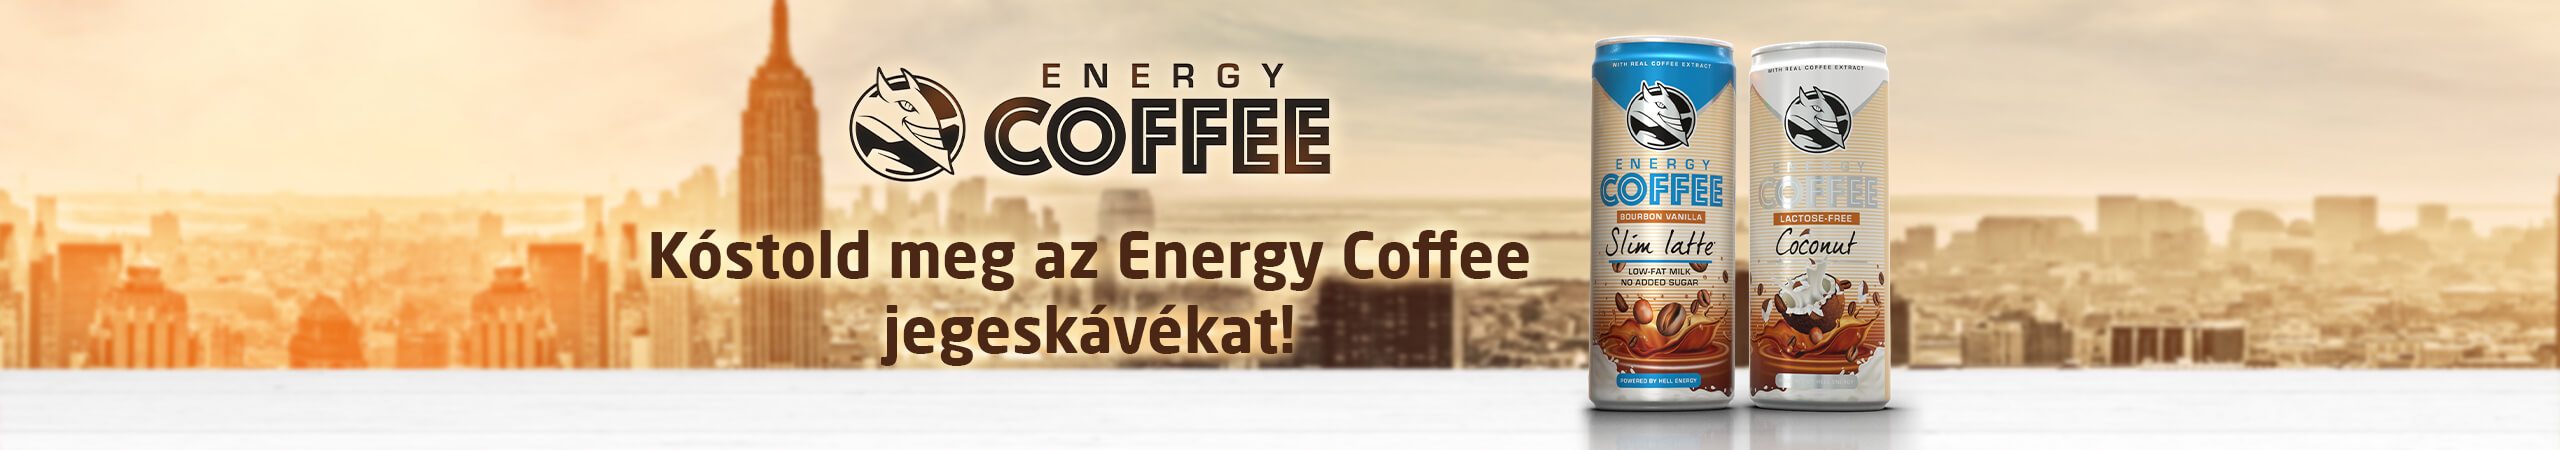 Kóstold meg az Energy Coffee jegeskávékat!